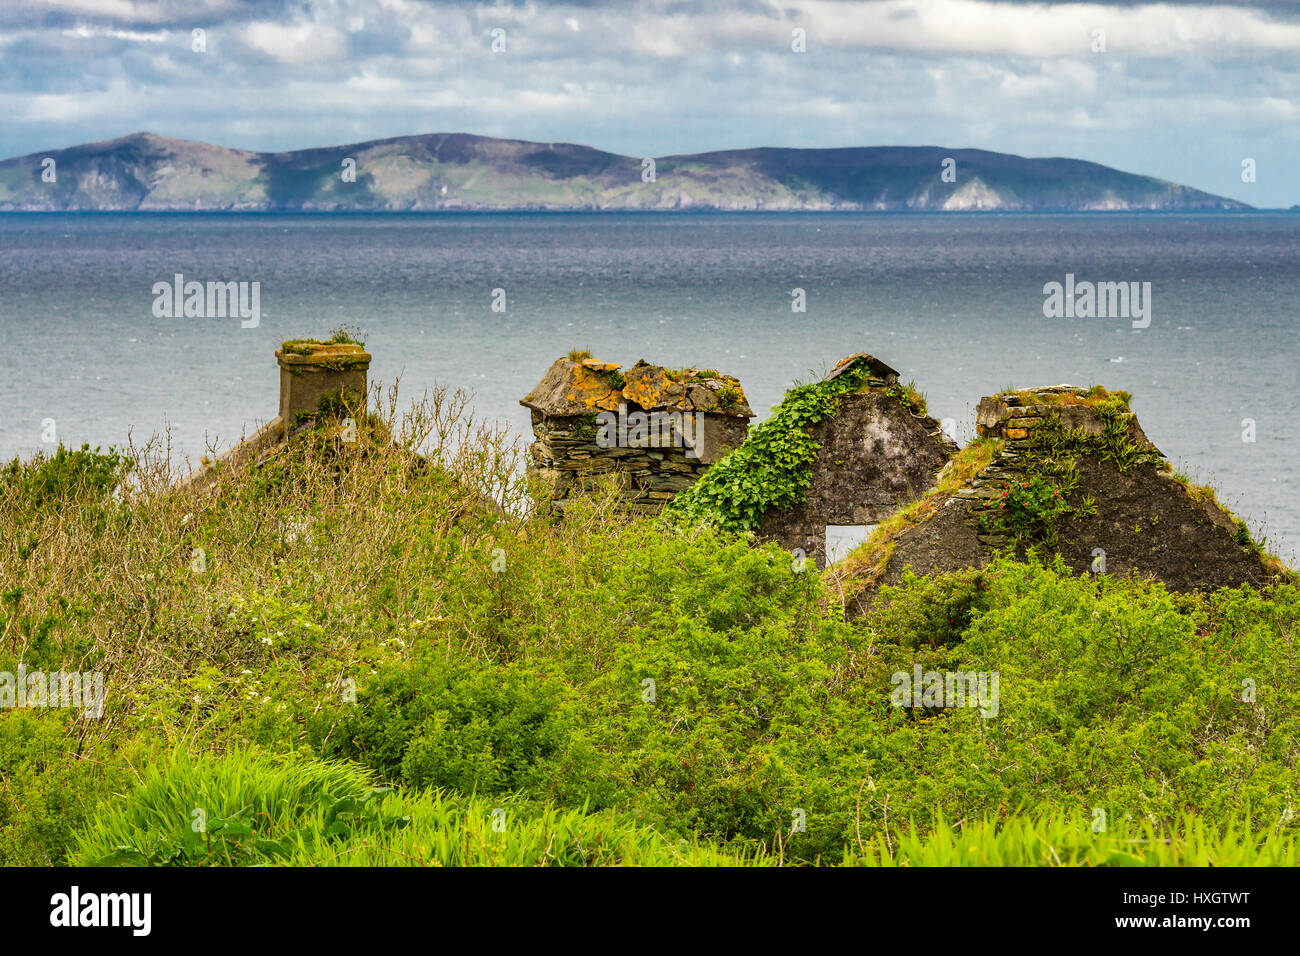 Ruine sur l'île de Valentia, comté de Kerry, en Irlande, en vue de la péninsule de Dingle (arrière) Banque D'Images